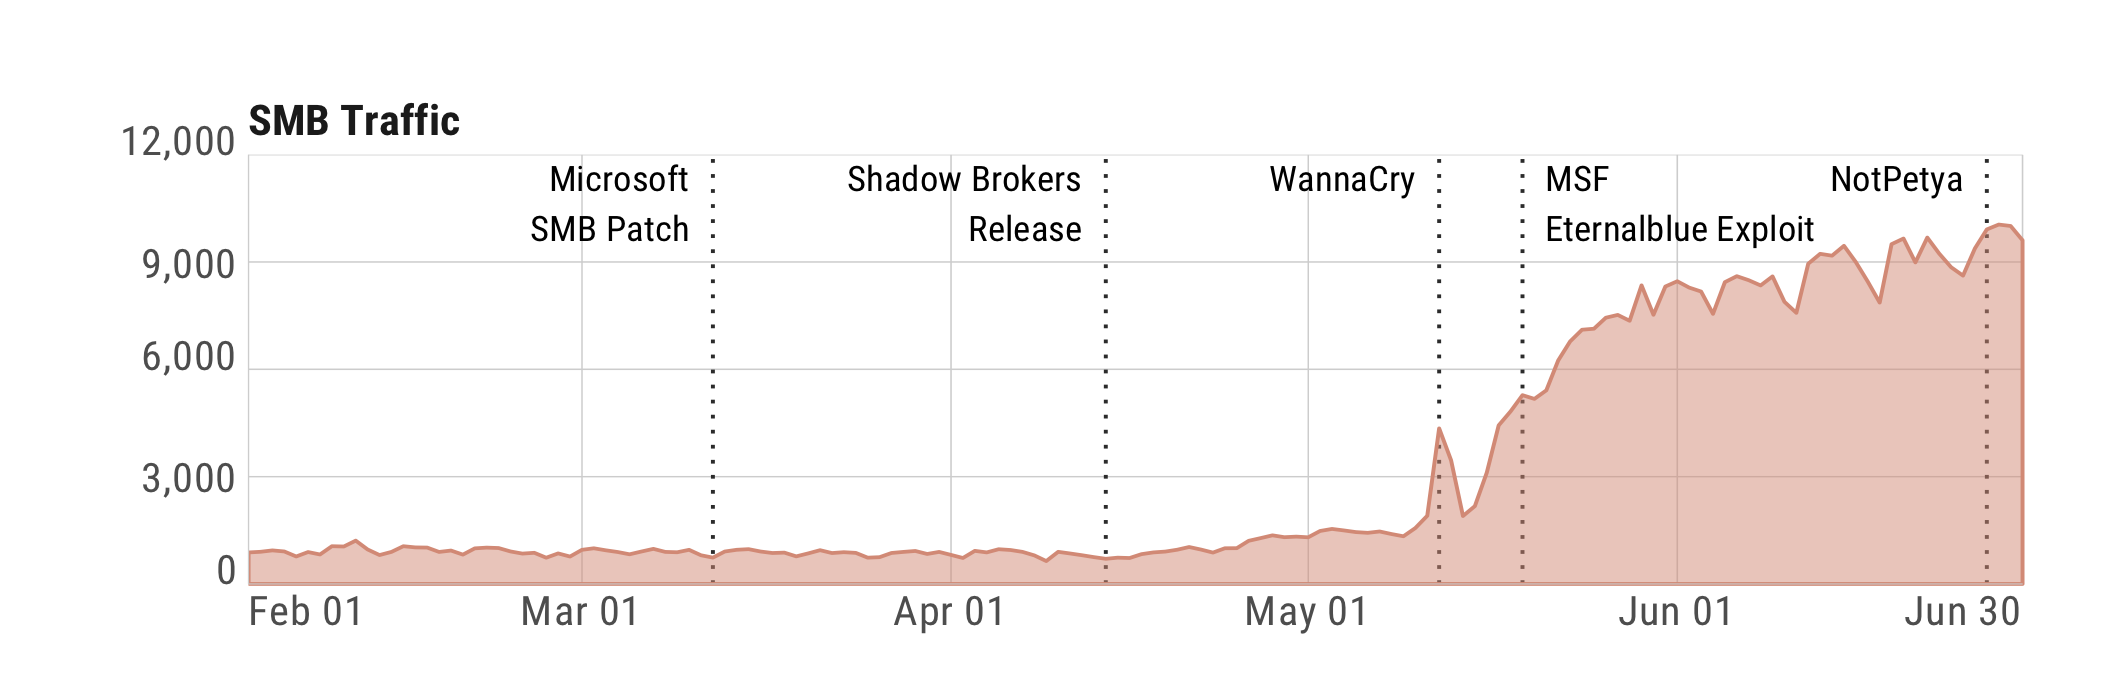 Post-Shadow Brokers SMB Chart